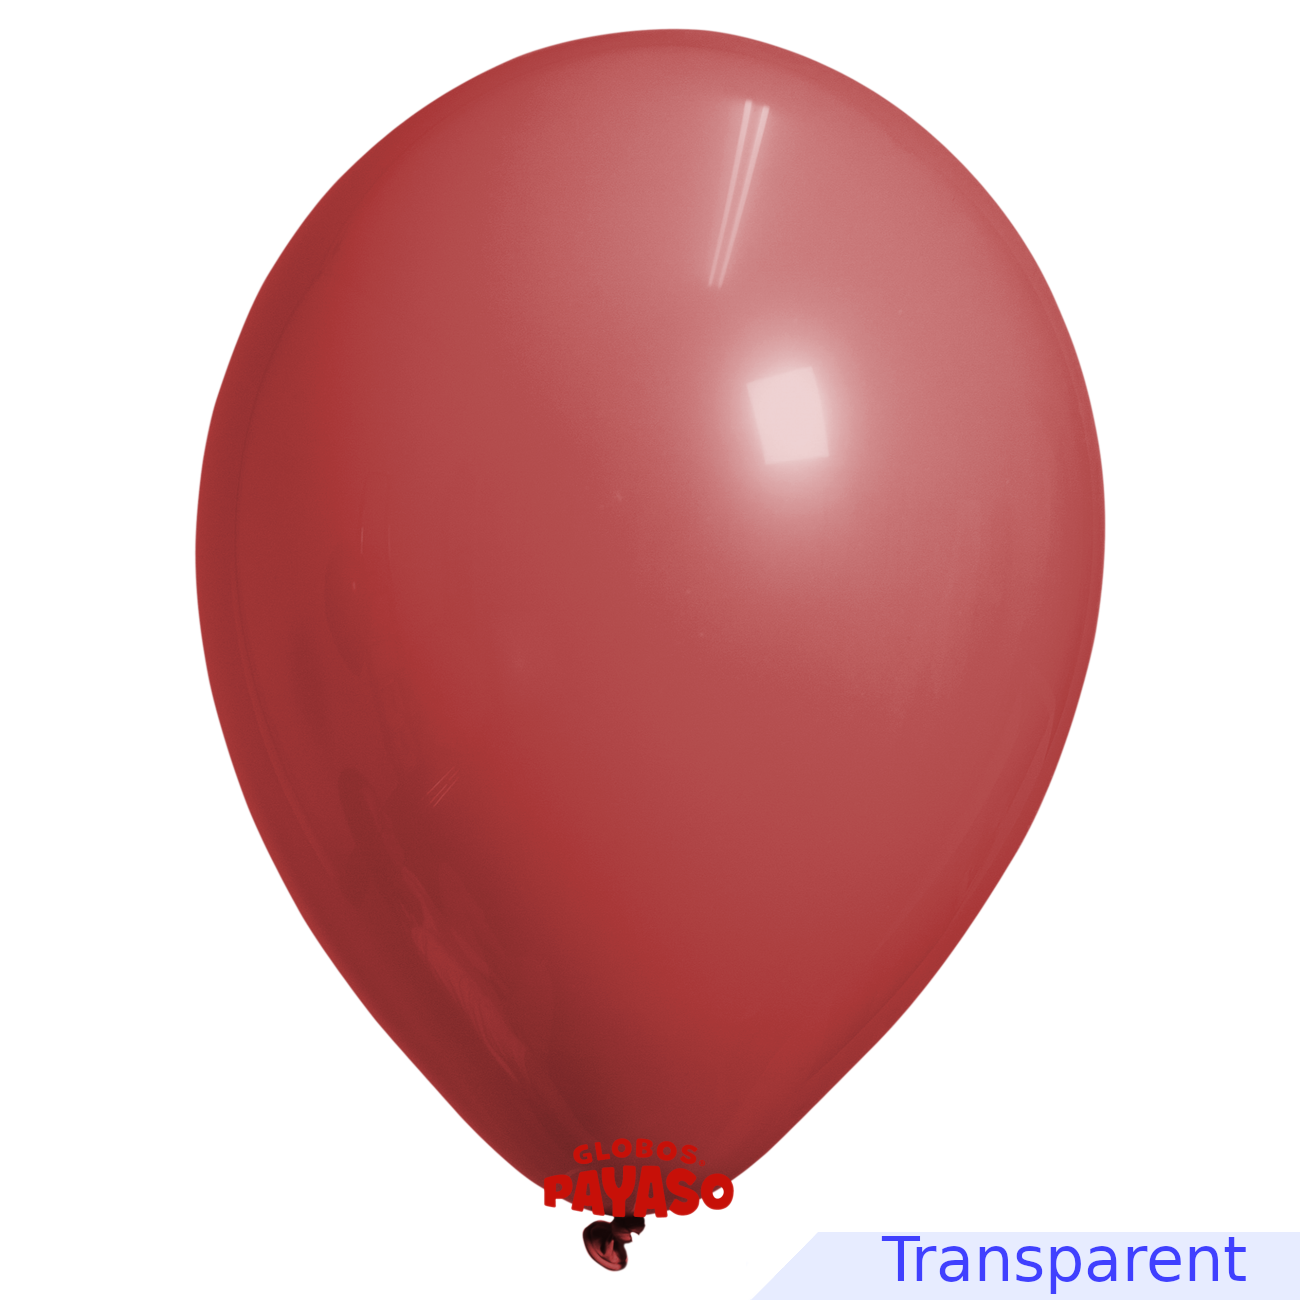 Globos Payaso / Unique 5" Ruby Red Translucid Decorator Balloon